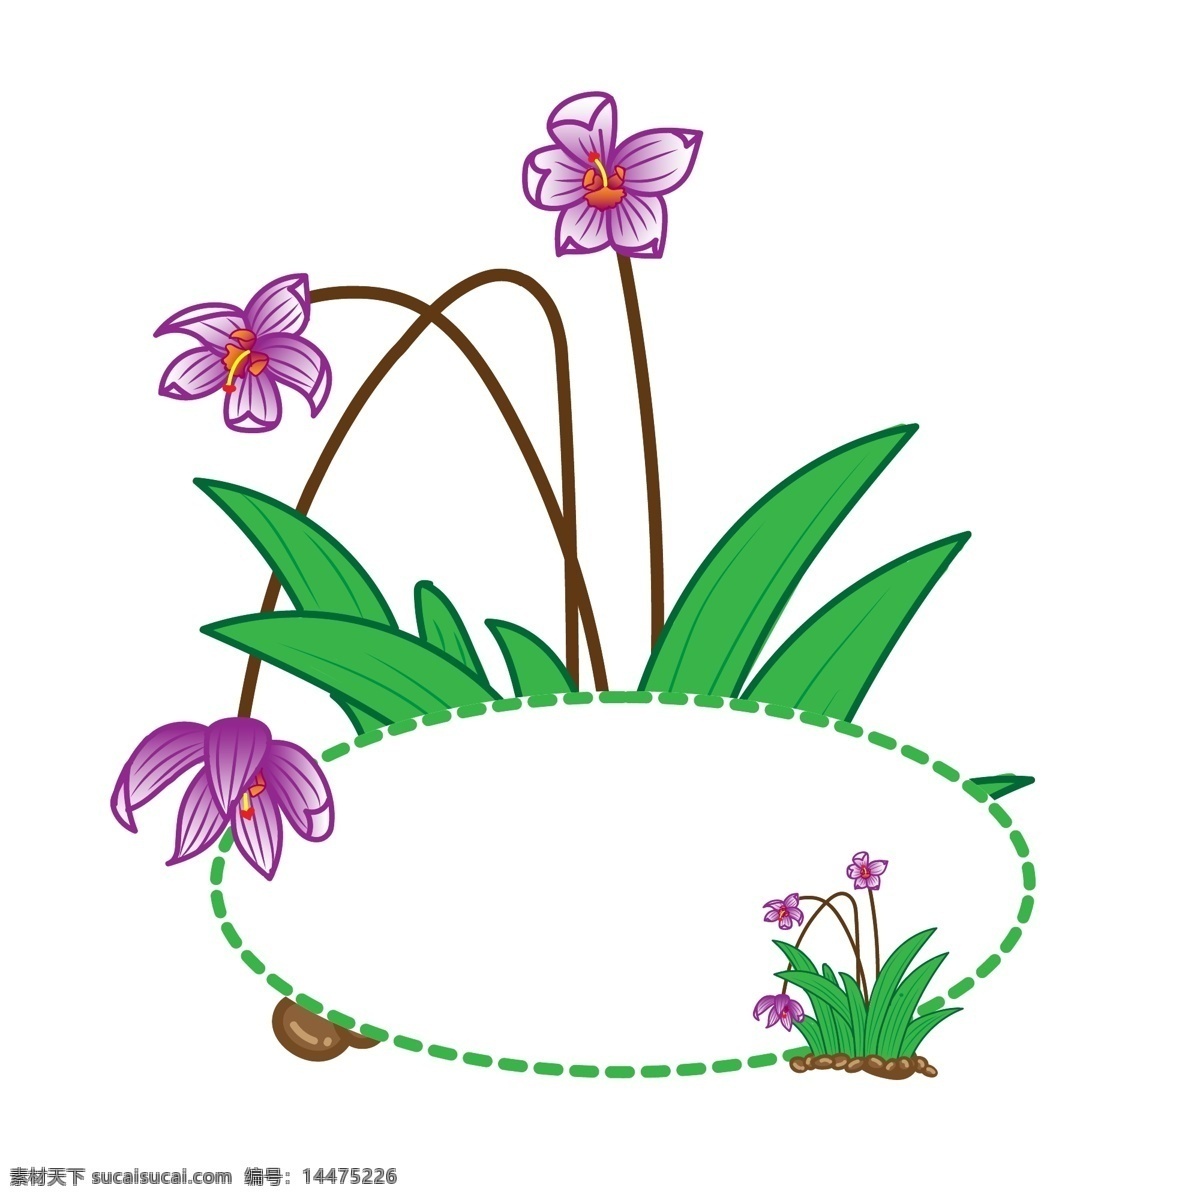 矢量 兰花 植物 边框 商用 插画 元素 手绘风 渐变色 便签 花朵边框 鲜花冰箱贴